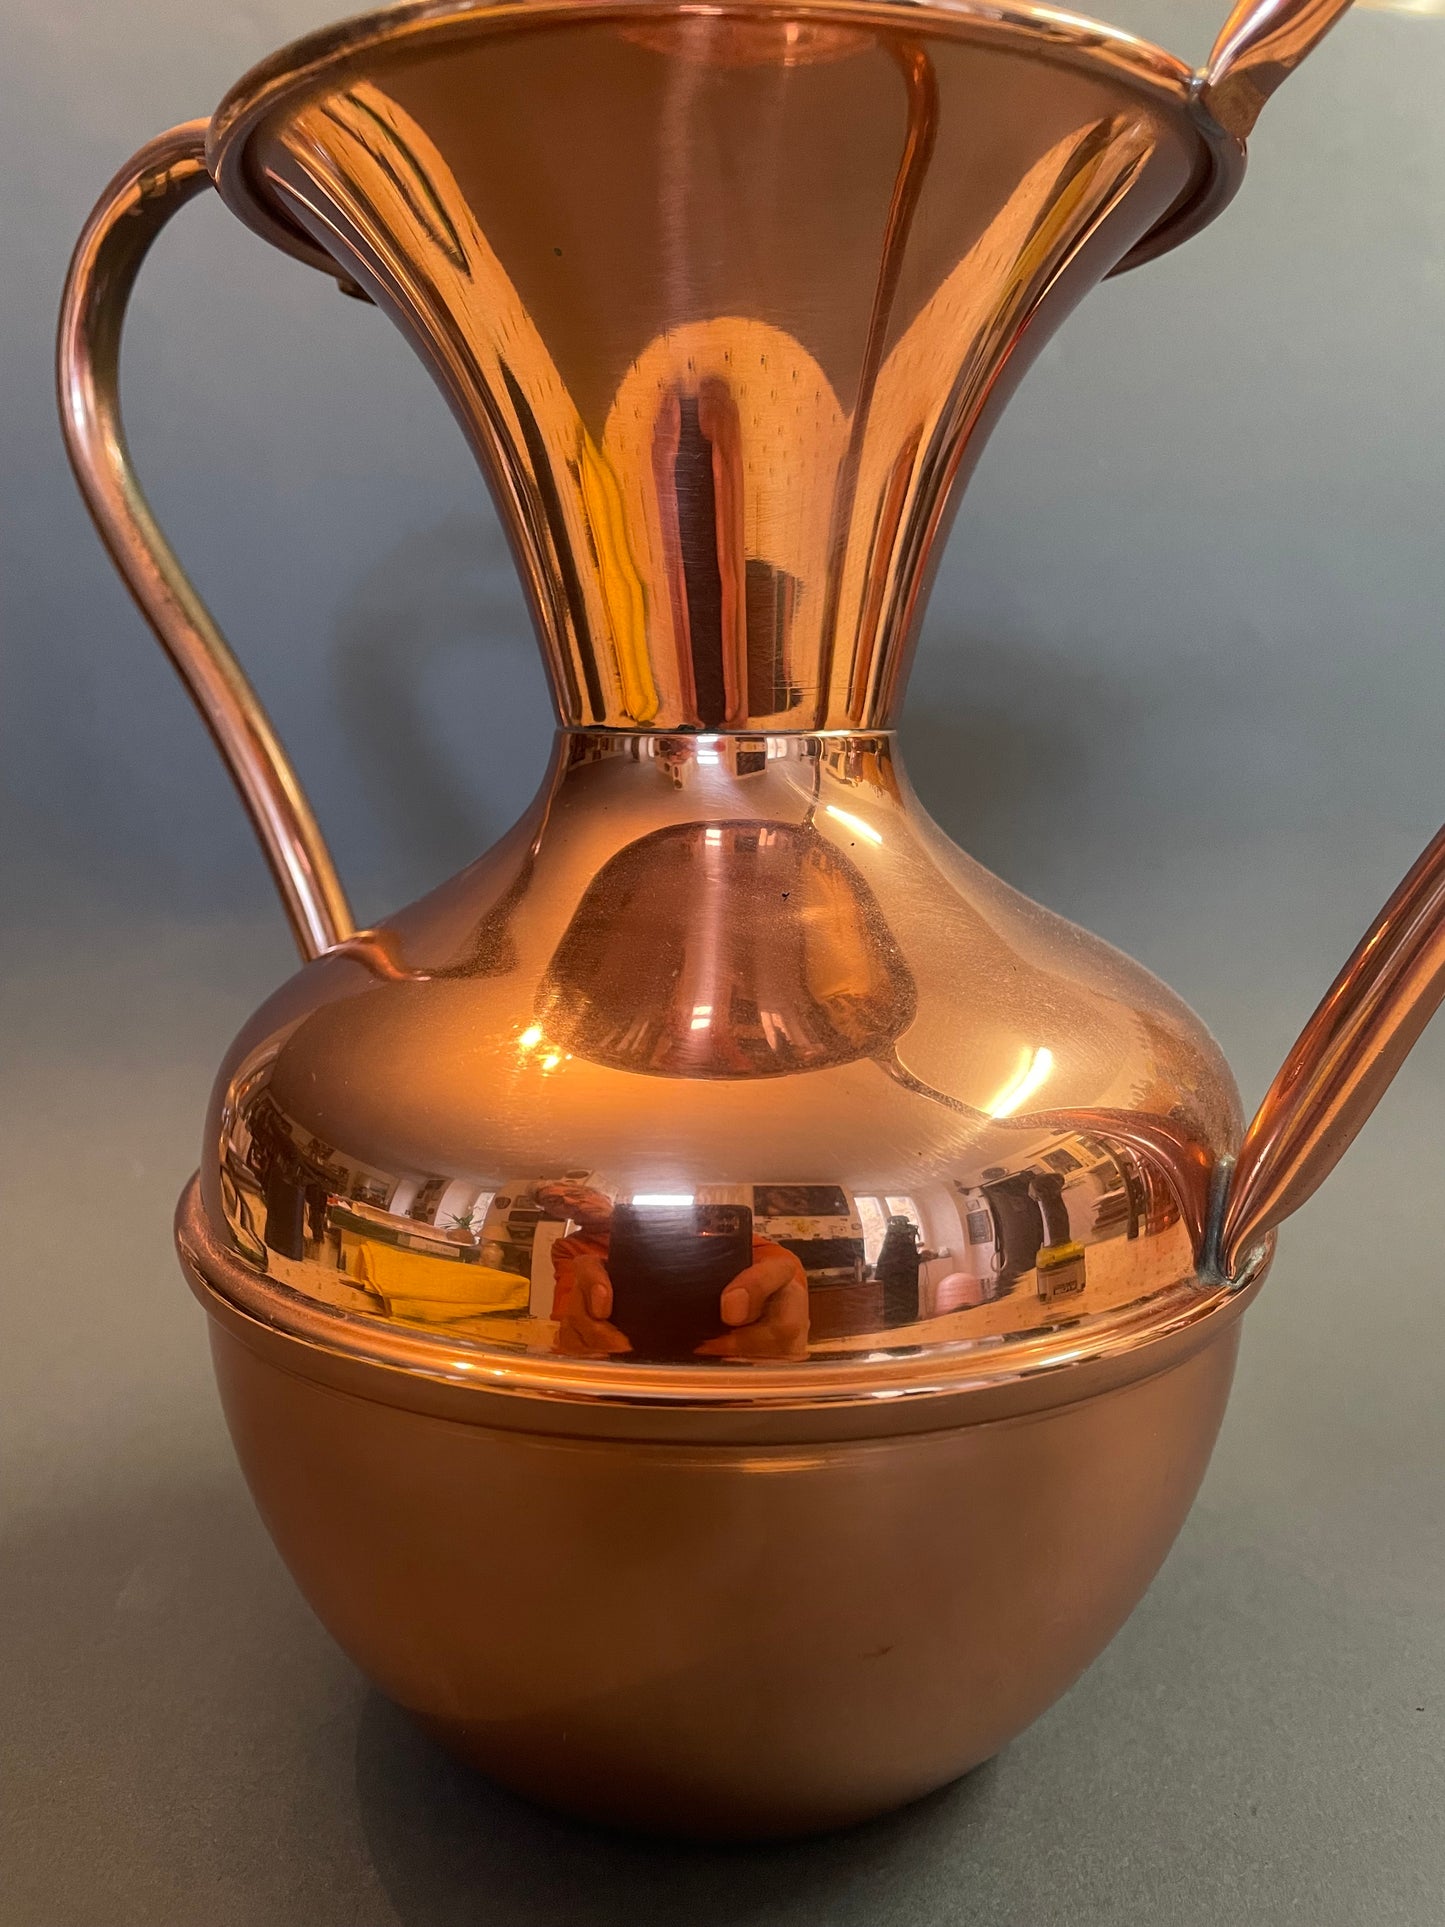 Grand vase en cuivre Artdéco, Lecellier, Villedieu, 20 cm de haut